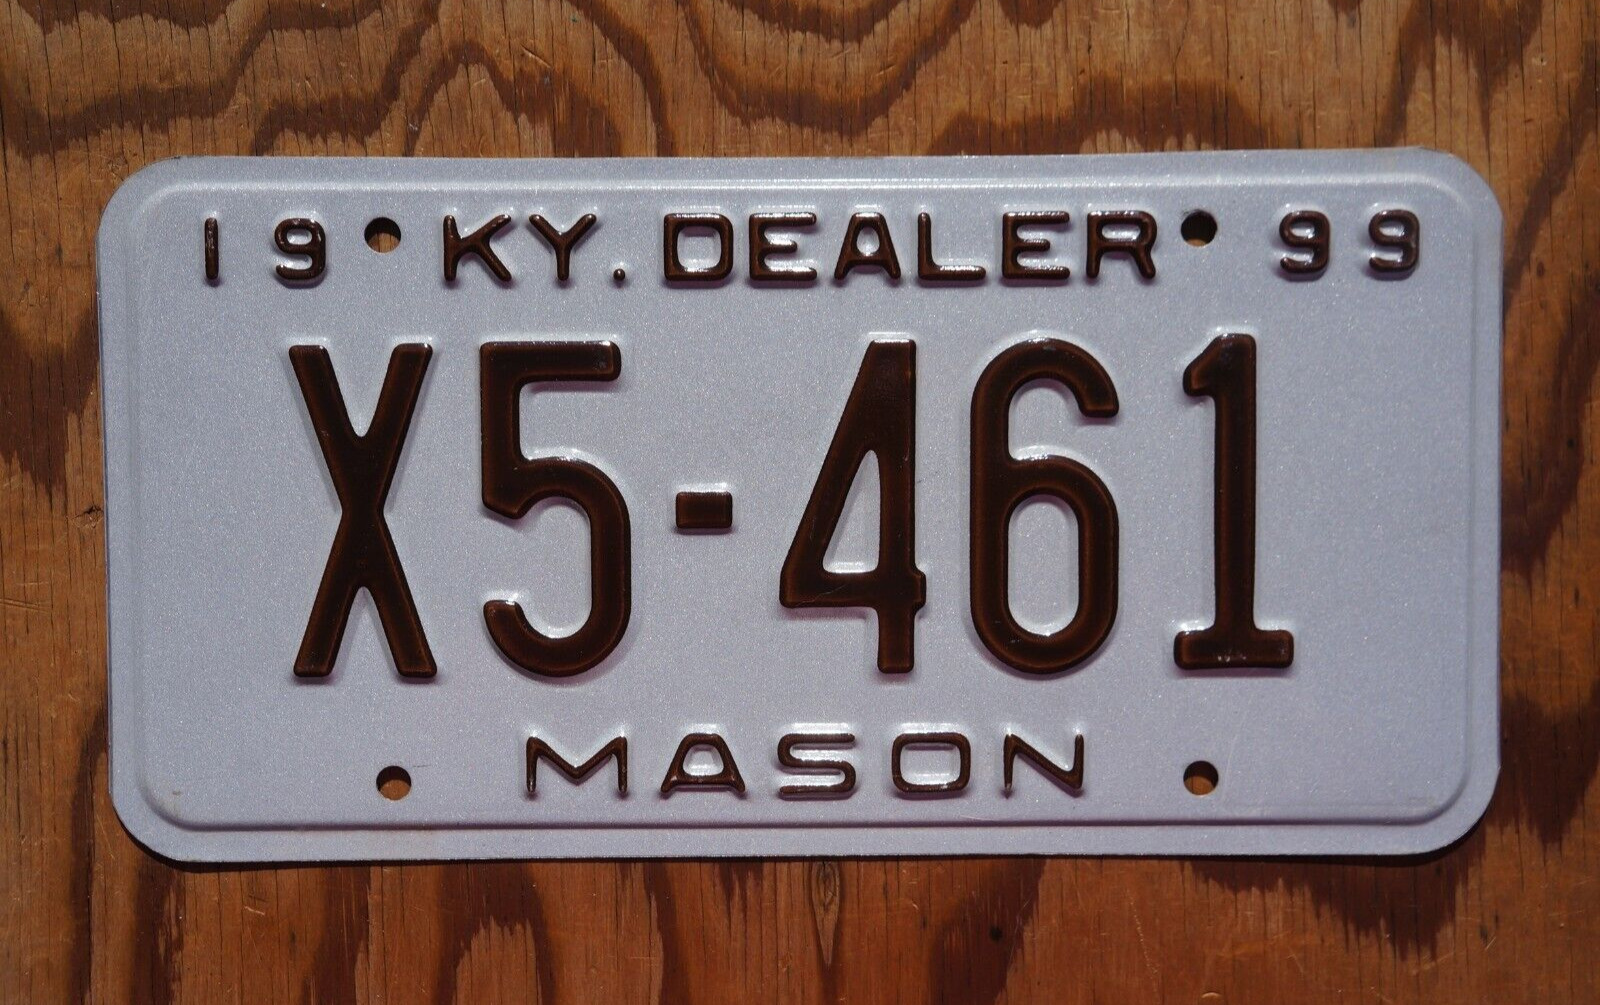 1999 MASON Kentucky DEALER License Plate